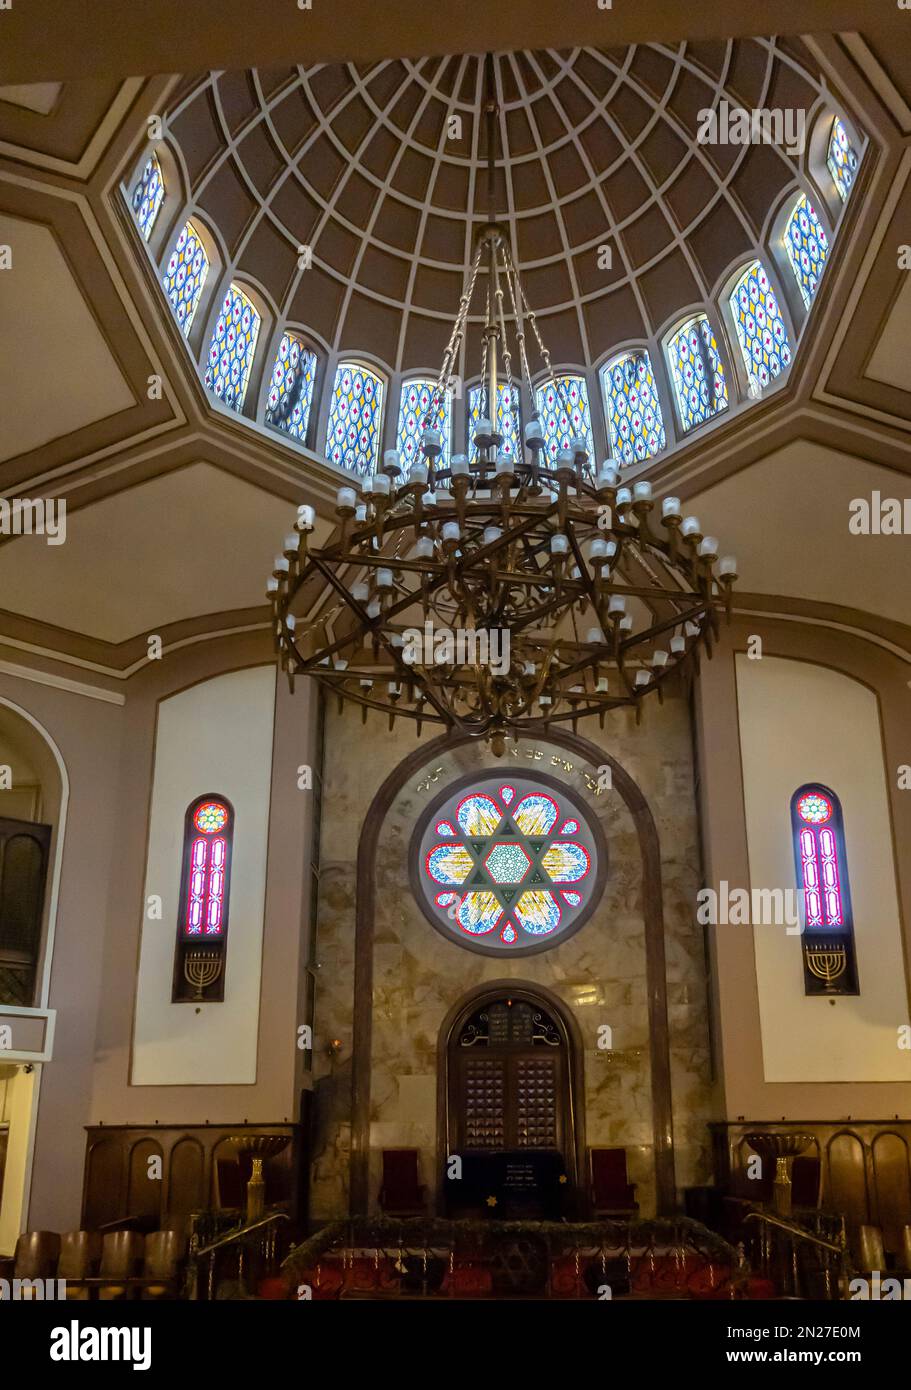 Innenseite der Neve-Shalom-Synagoge im Karaköy-Viertel von Beyoğlu, Istanbul, Türkei. Stockfoto